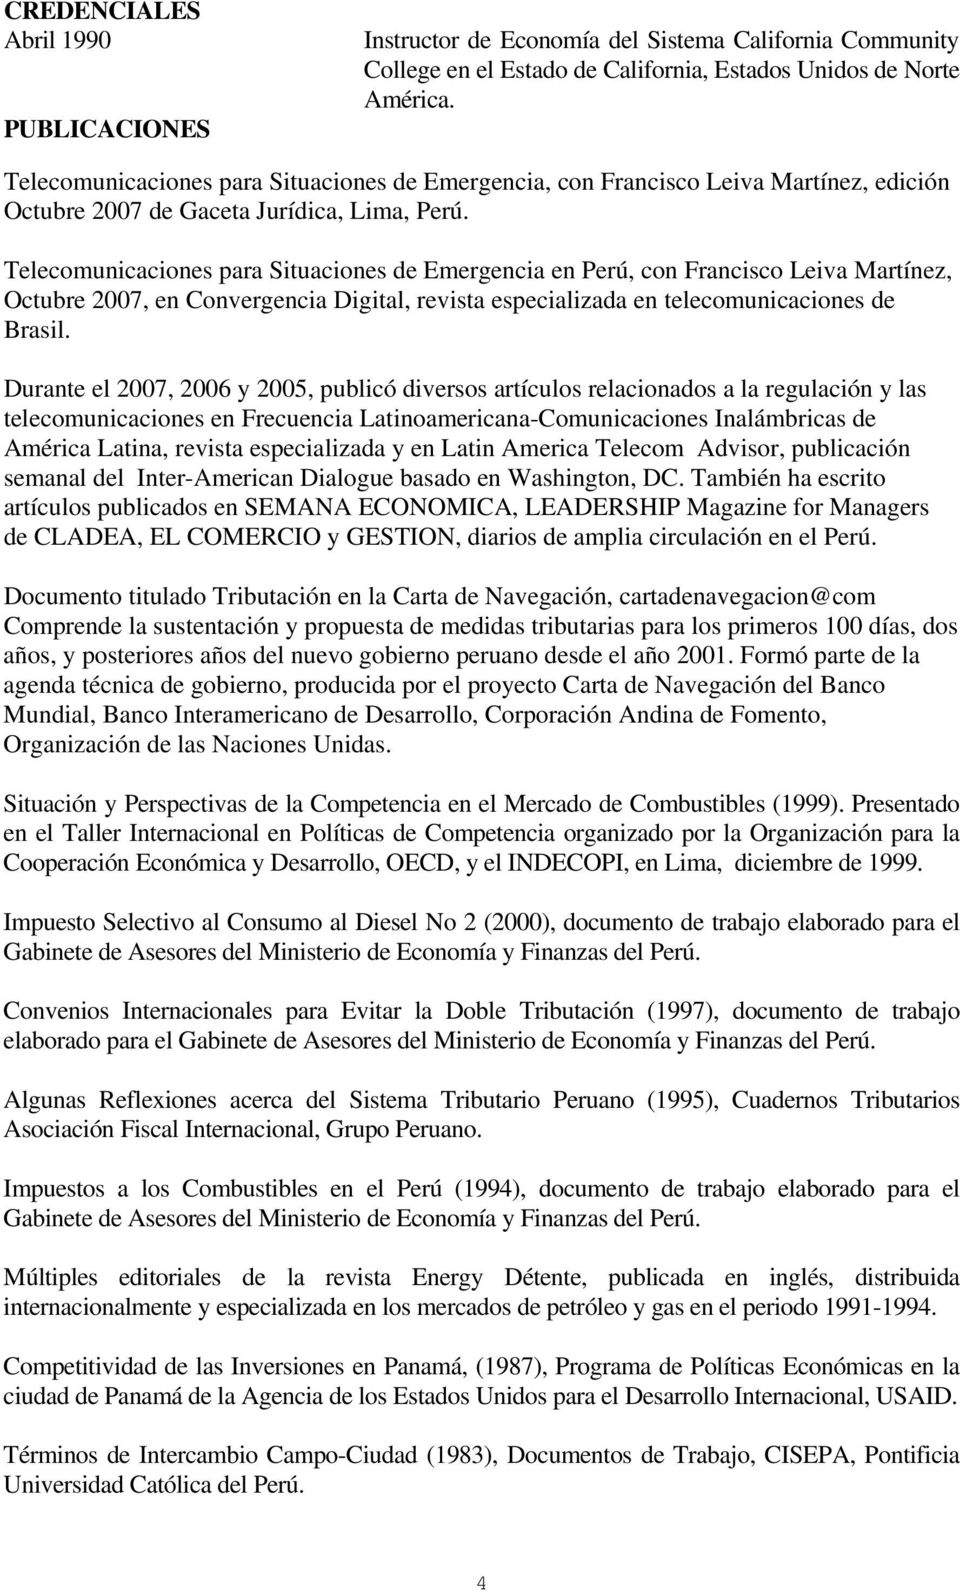 Telecomunicaciones para Situaciones de Emergencia en Perú, con Francisco Leiva Martínez, Octubre 2007, en Convergencia Digital, revista especializada en telecomunicaciones de Brasil.